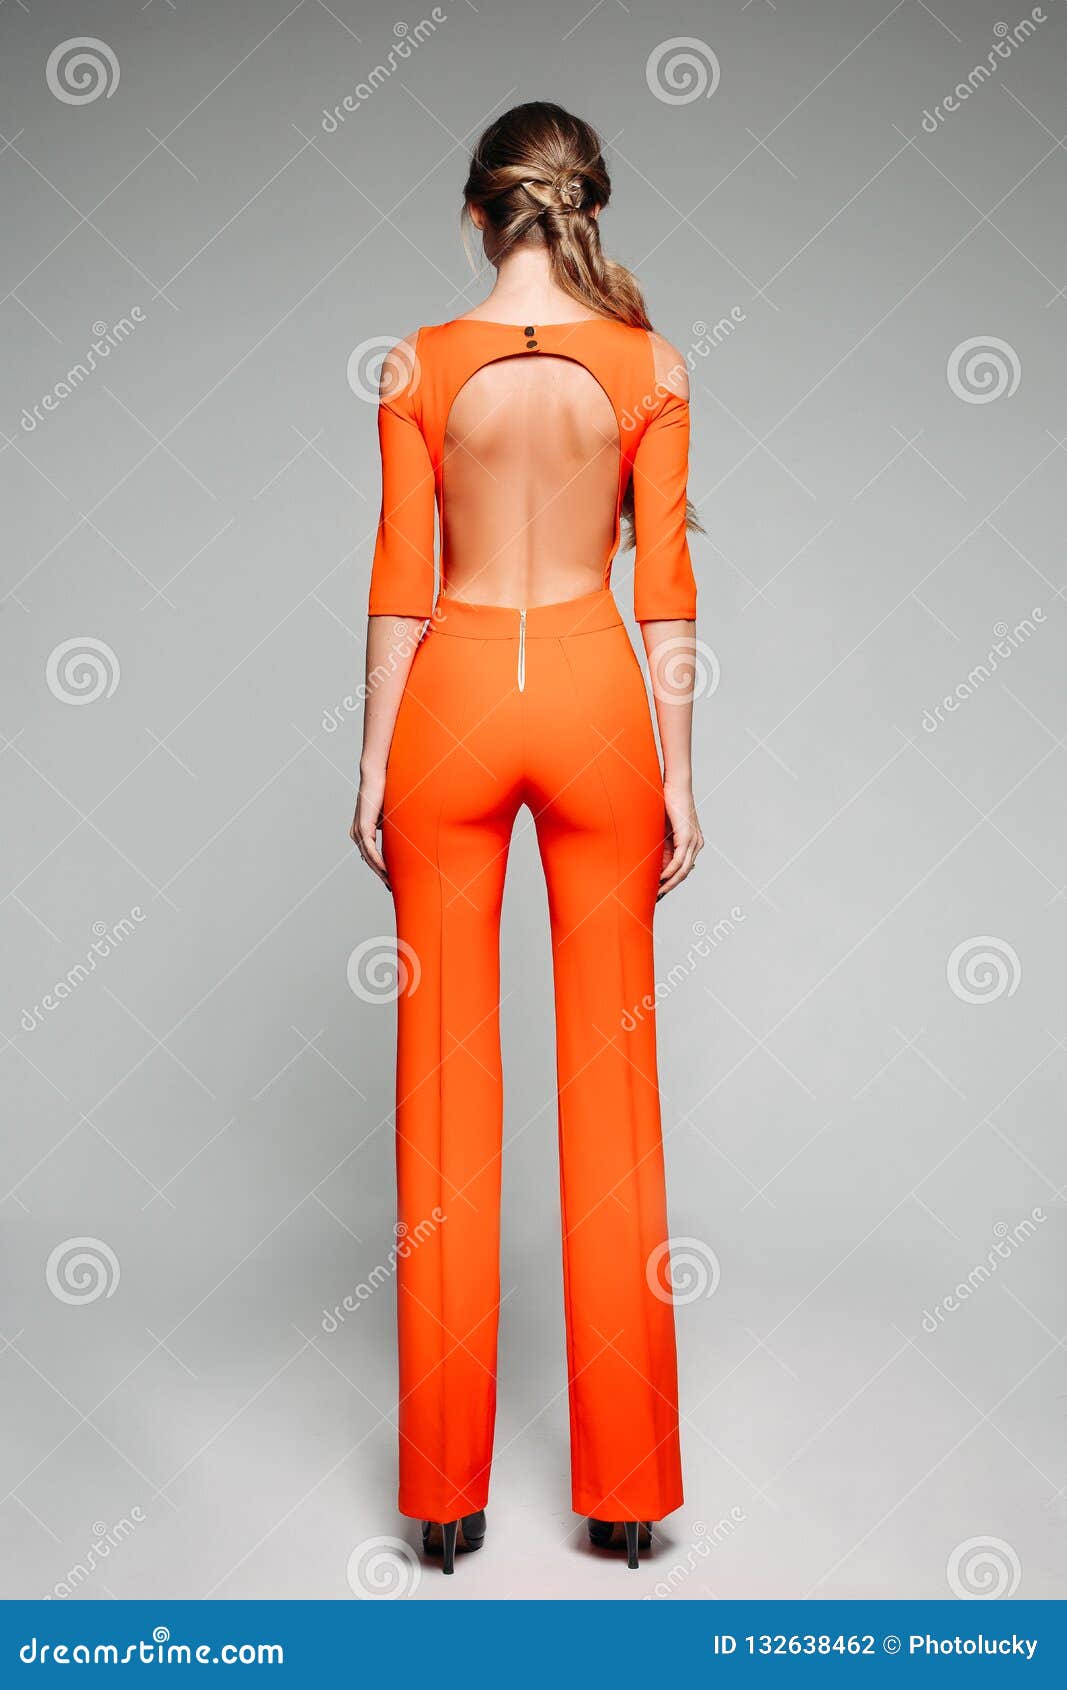 Shein orange bright strappy high heels | eBay